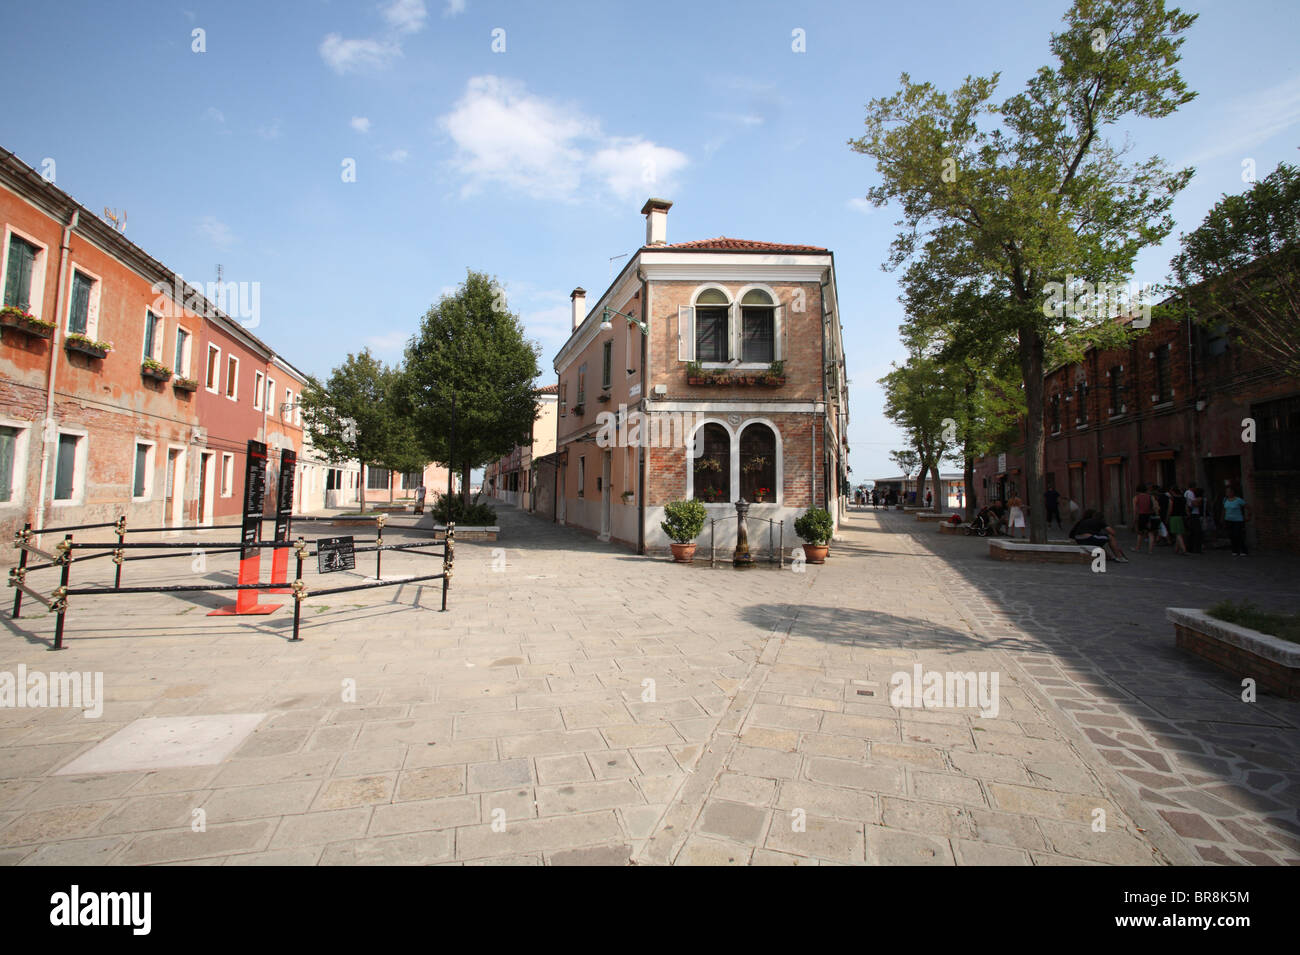 Le paysage urbain de Murano, Venise, Italie Banque D'Images